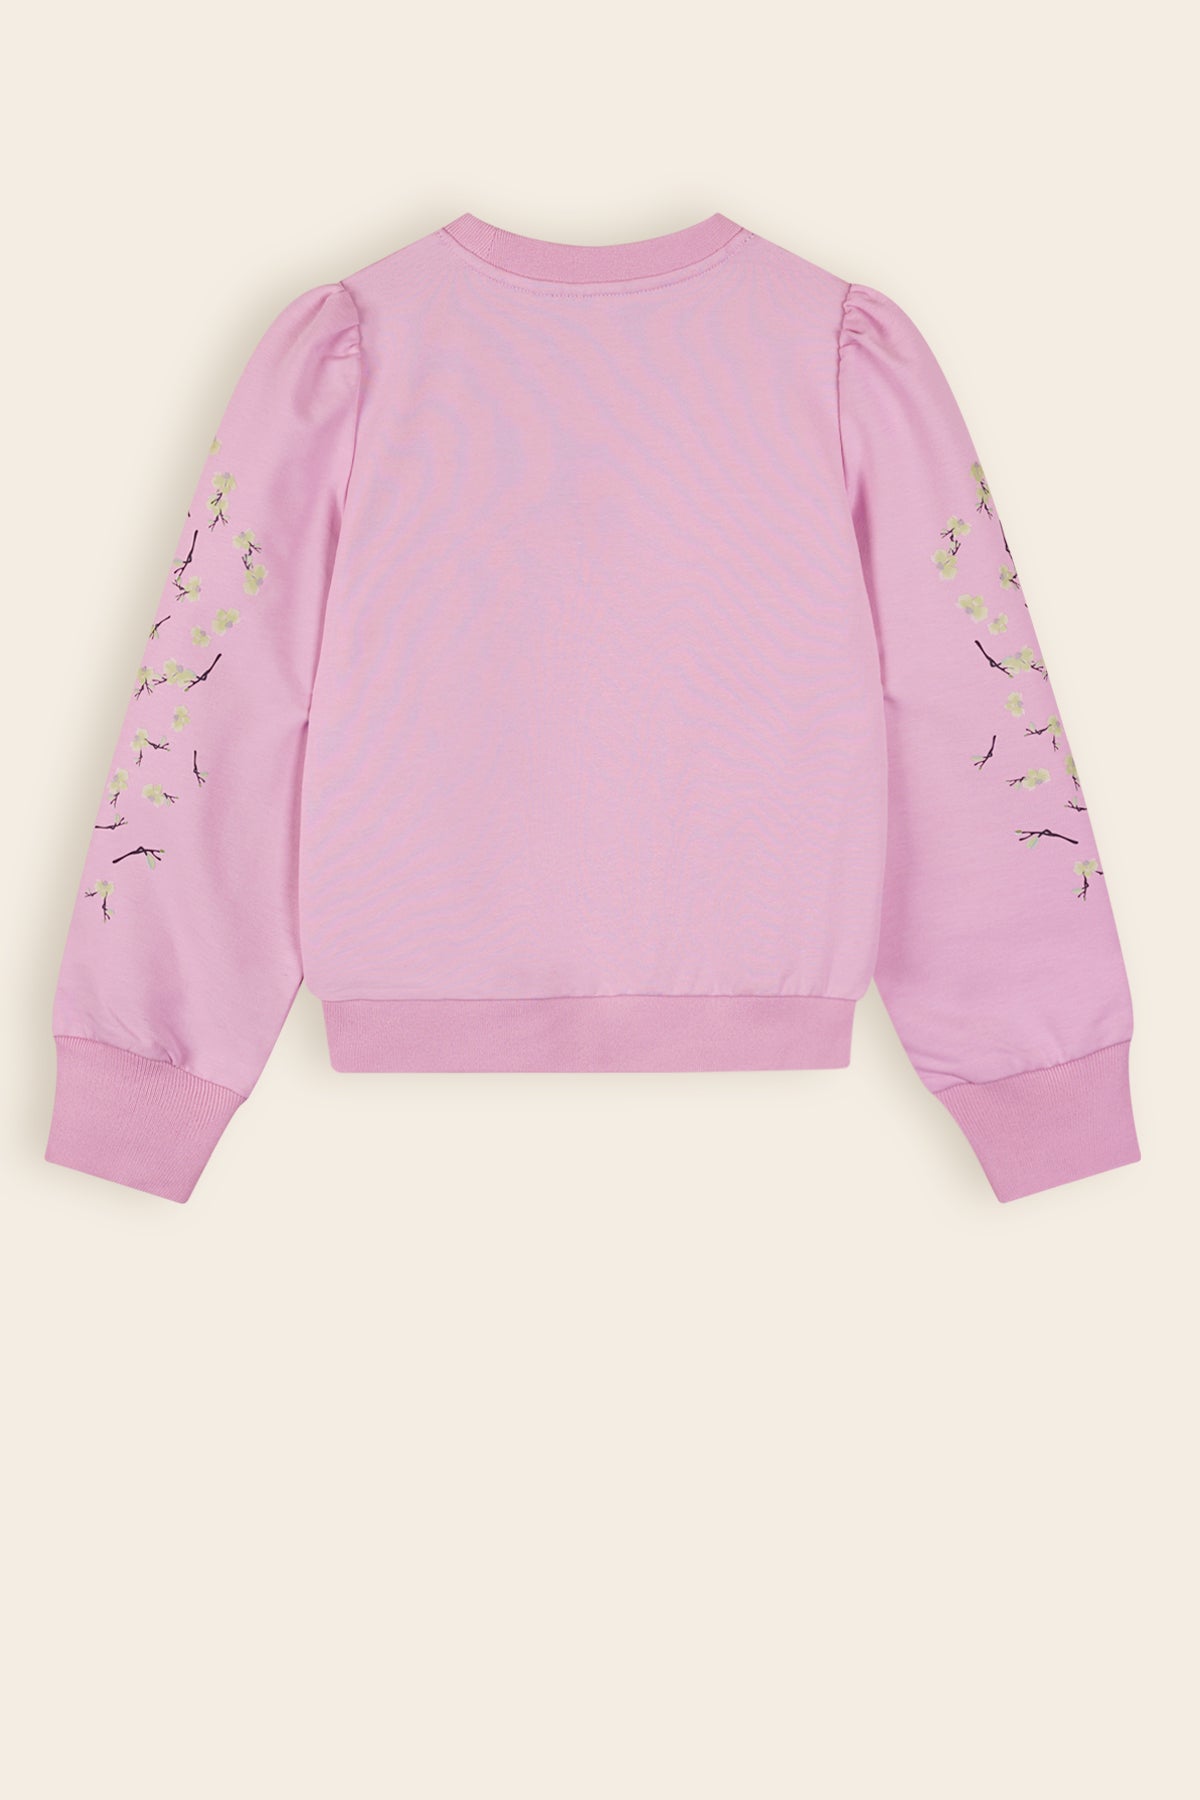 Kulet Sweater Print op Mouw Roze